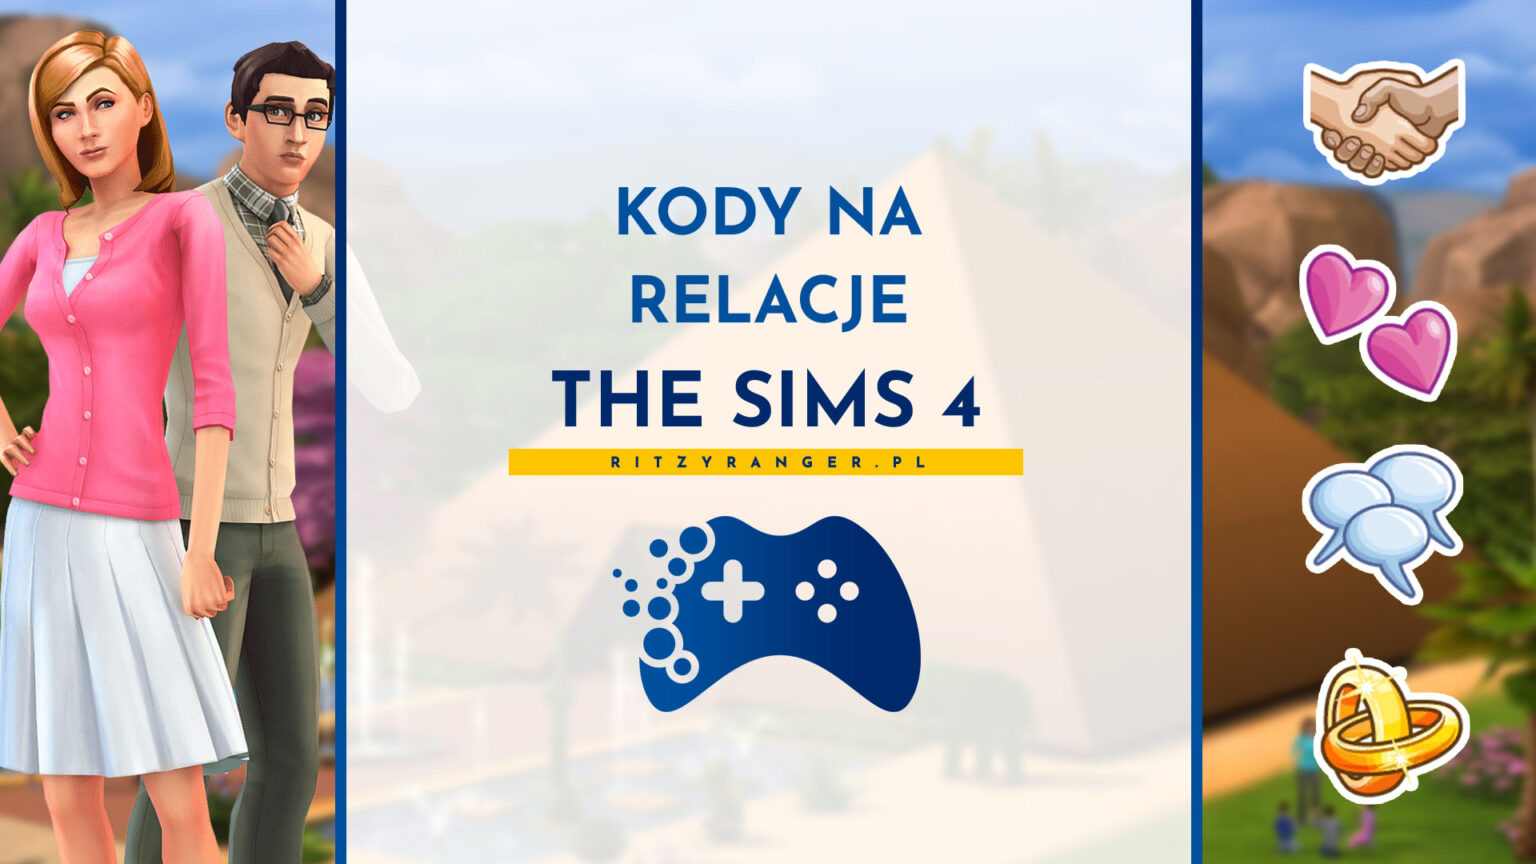 The Sims 1 Kody Na Przyjaciół Kody na relacje do The Sims 4 - cała lista! - Portal dla graczy RitzyRanger